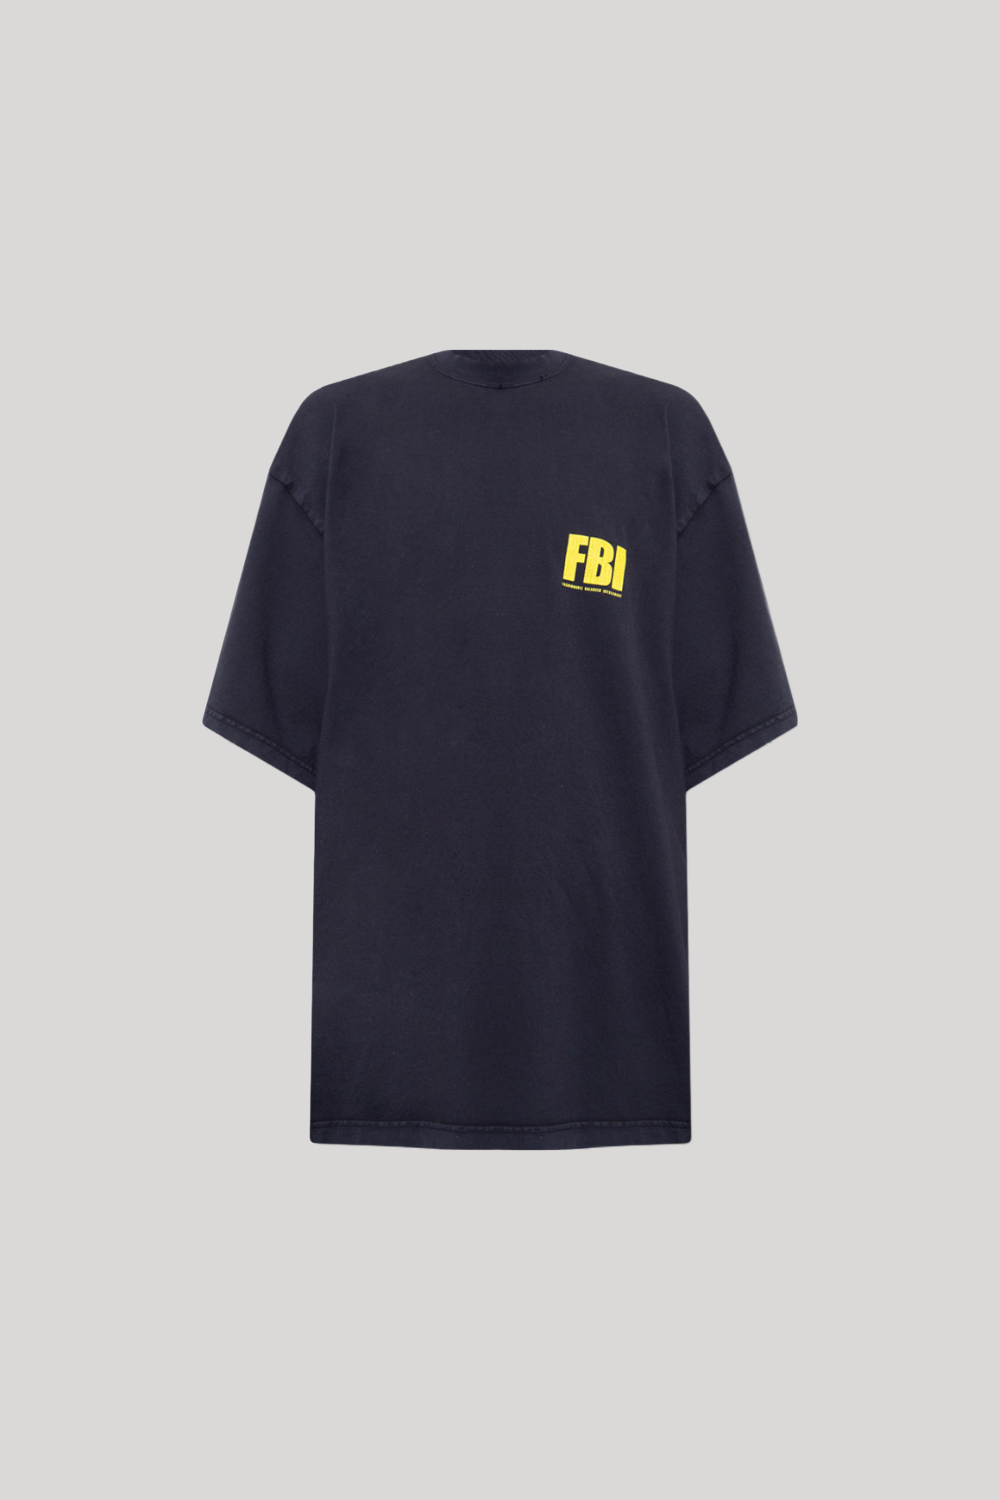 BALENCIAGA FBI T-SHIRT